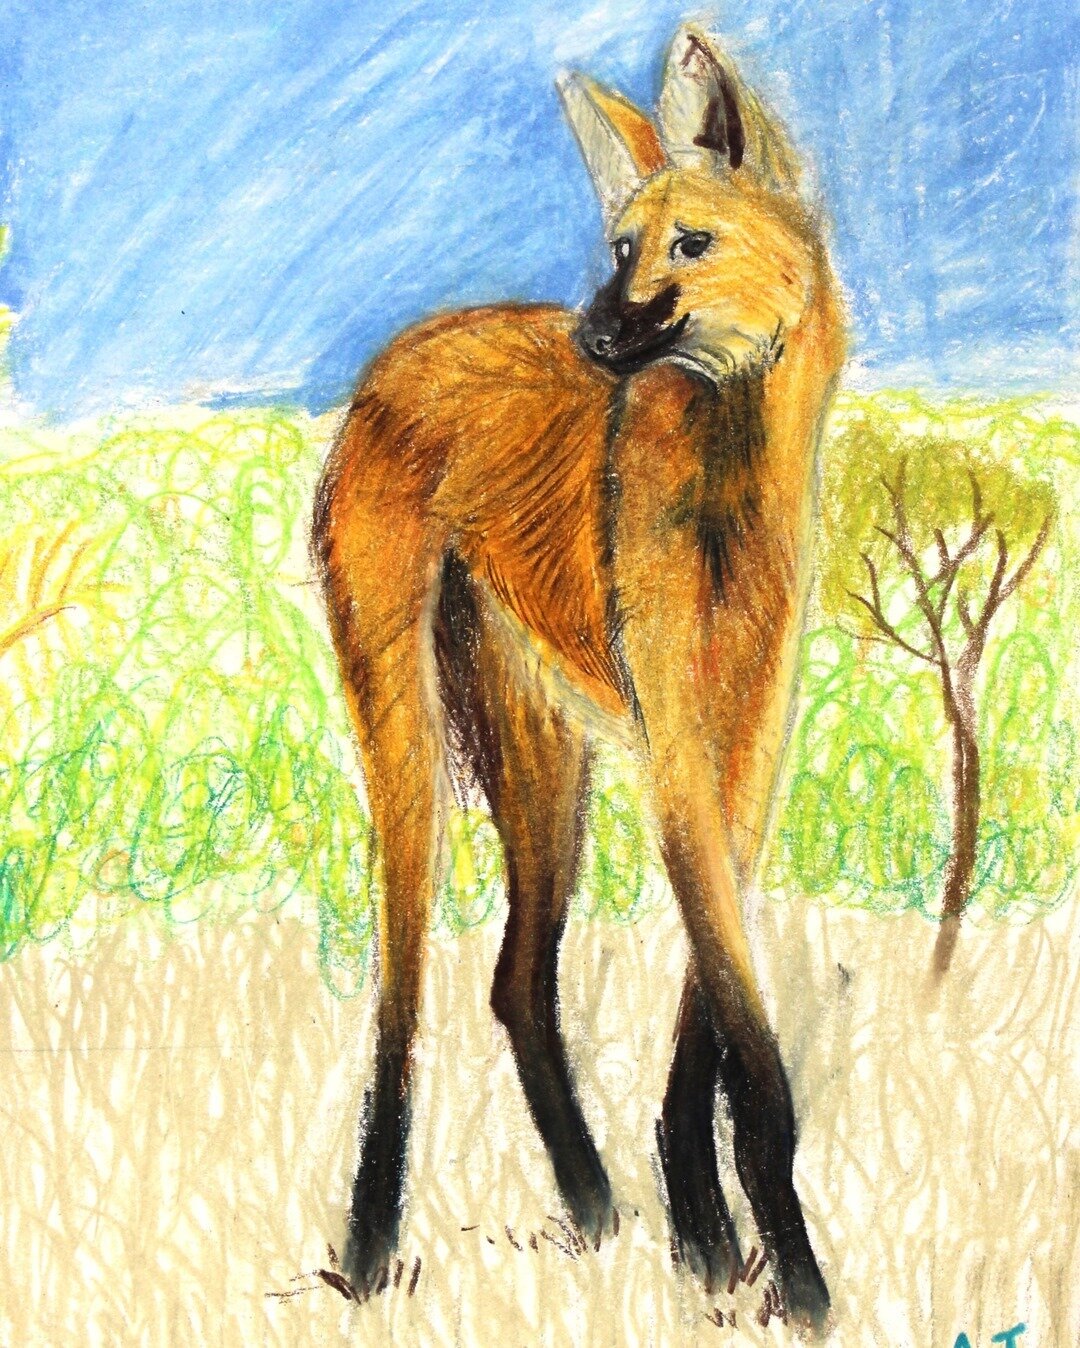 &quot;Fox, Wolf, Deer?&quot; Prismacolor Drawing⠀⠀⠀⠀⠀⠀⠀⠀⠀
Artist: Alice Johnson, age 11⠀⠀⠀⠀⠀⠀⠀⠀⠀
.⠀⠀⠀⠀⠀⠀⠀⠀⠀
.⠀⠀⠀⠀⠀⠀⠀⠀⠀
.⠀⠀⠀⠀⠀⠀⠀⠀⠀
#animalart #animaldrawing #prismacolor #prismacolordrawing #drawing #prismacolorpremier #instaart #art #artclass #artstu